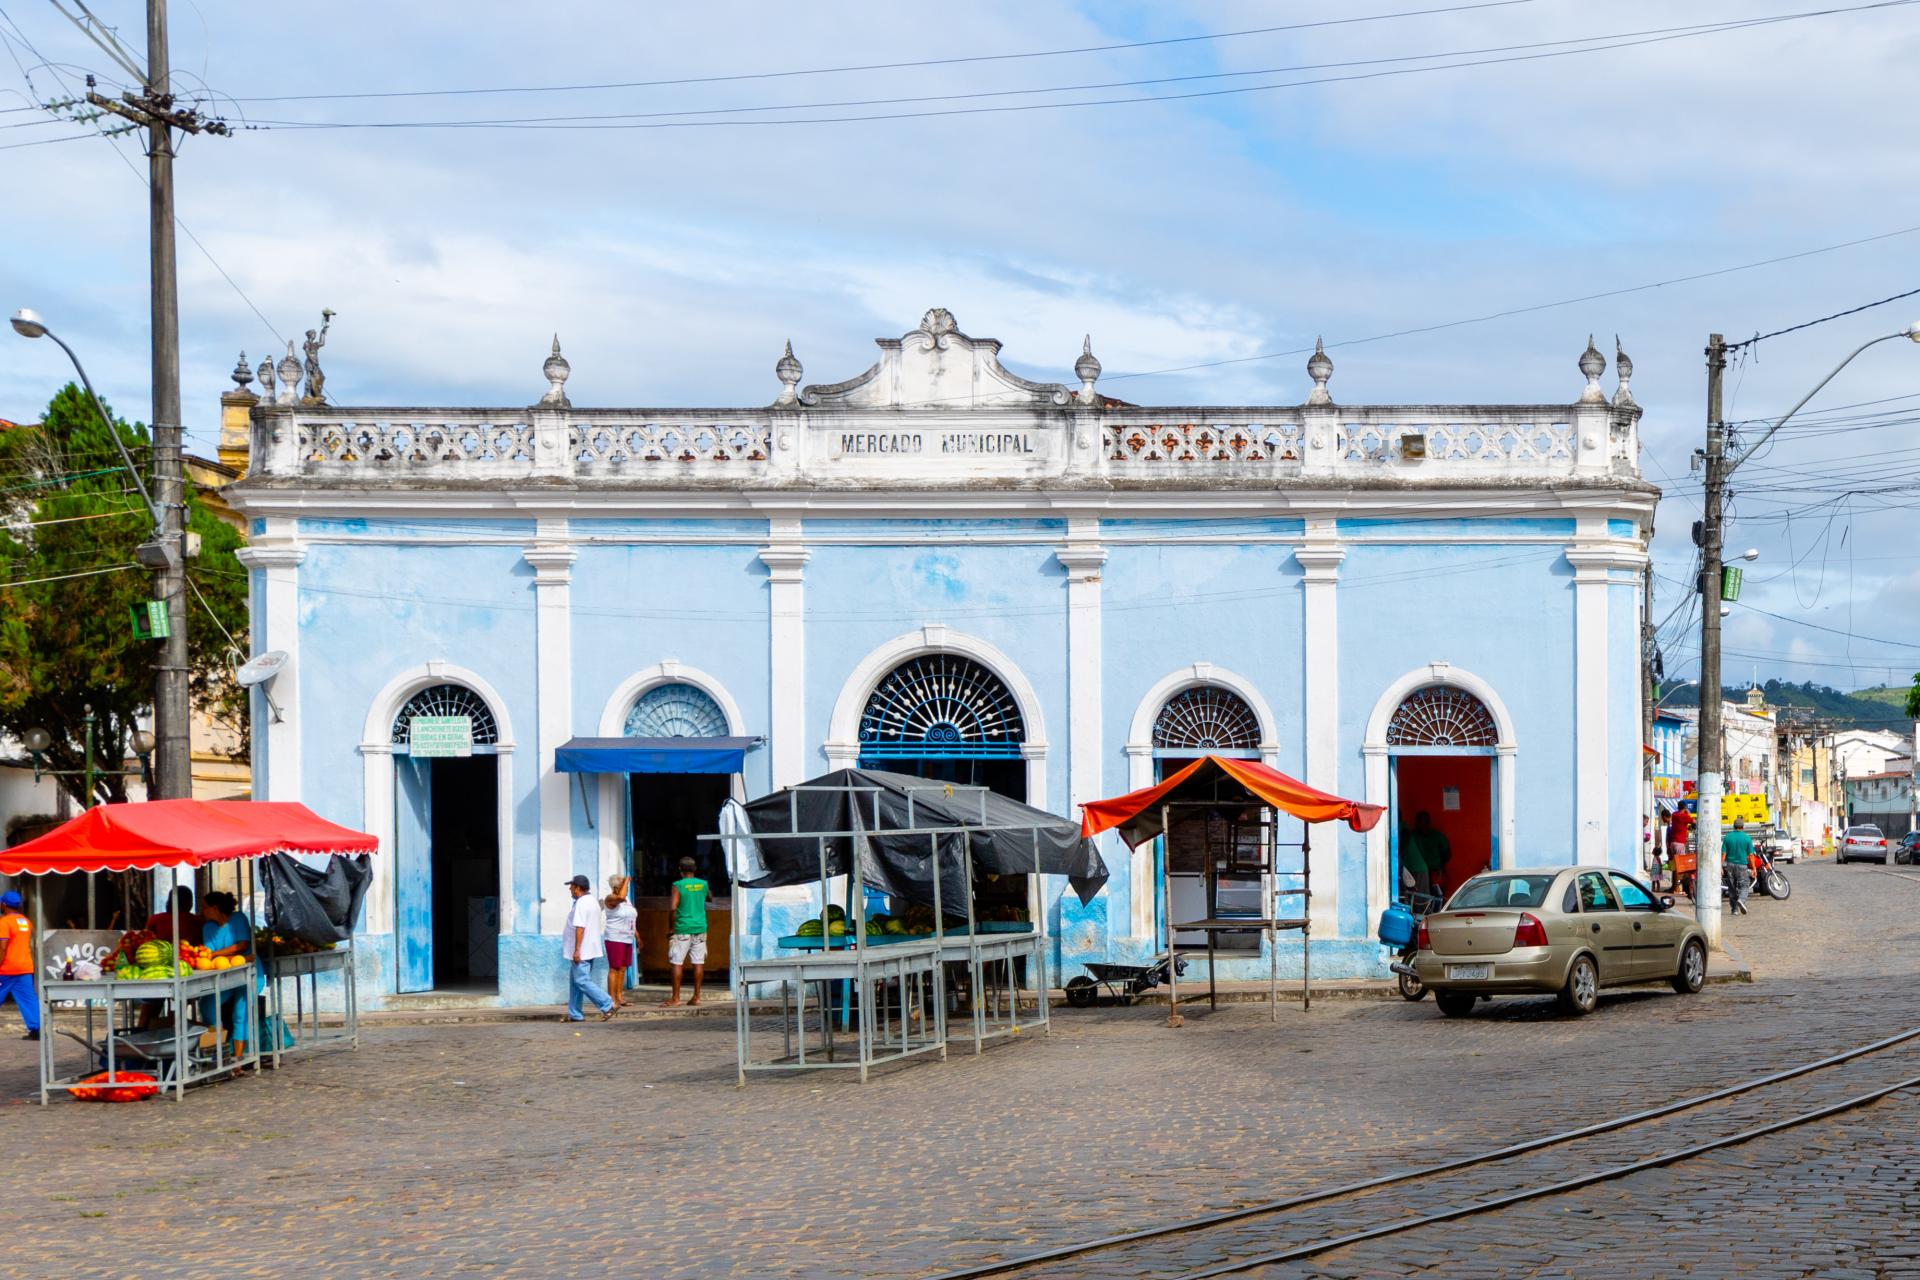 Mercado municipal de sao felix bahia 2017 8377